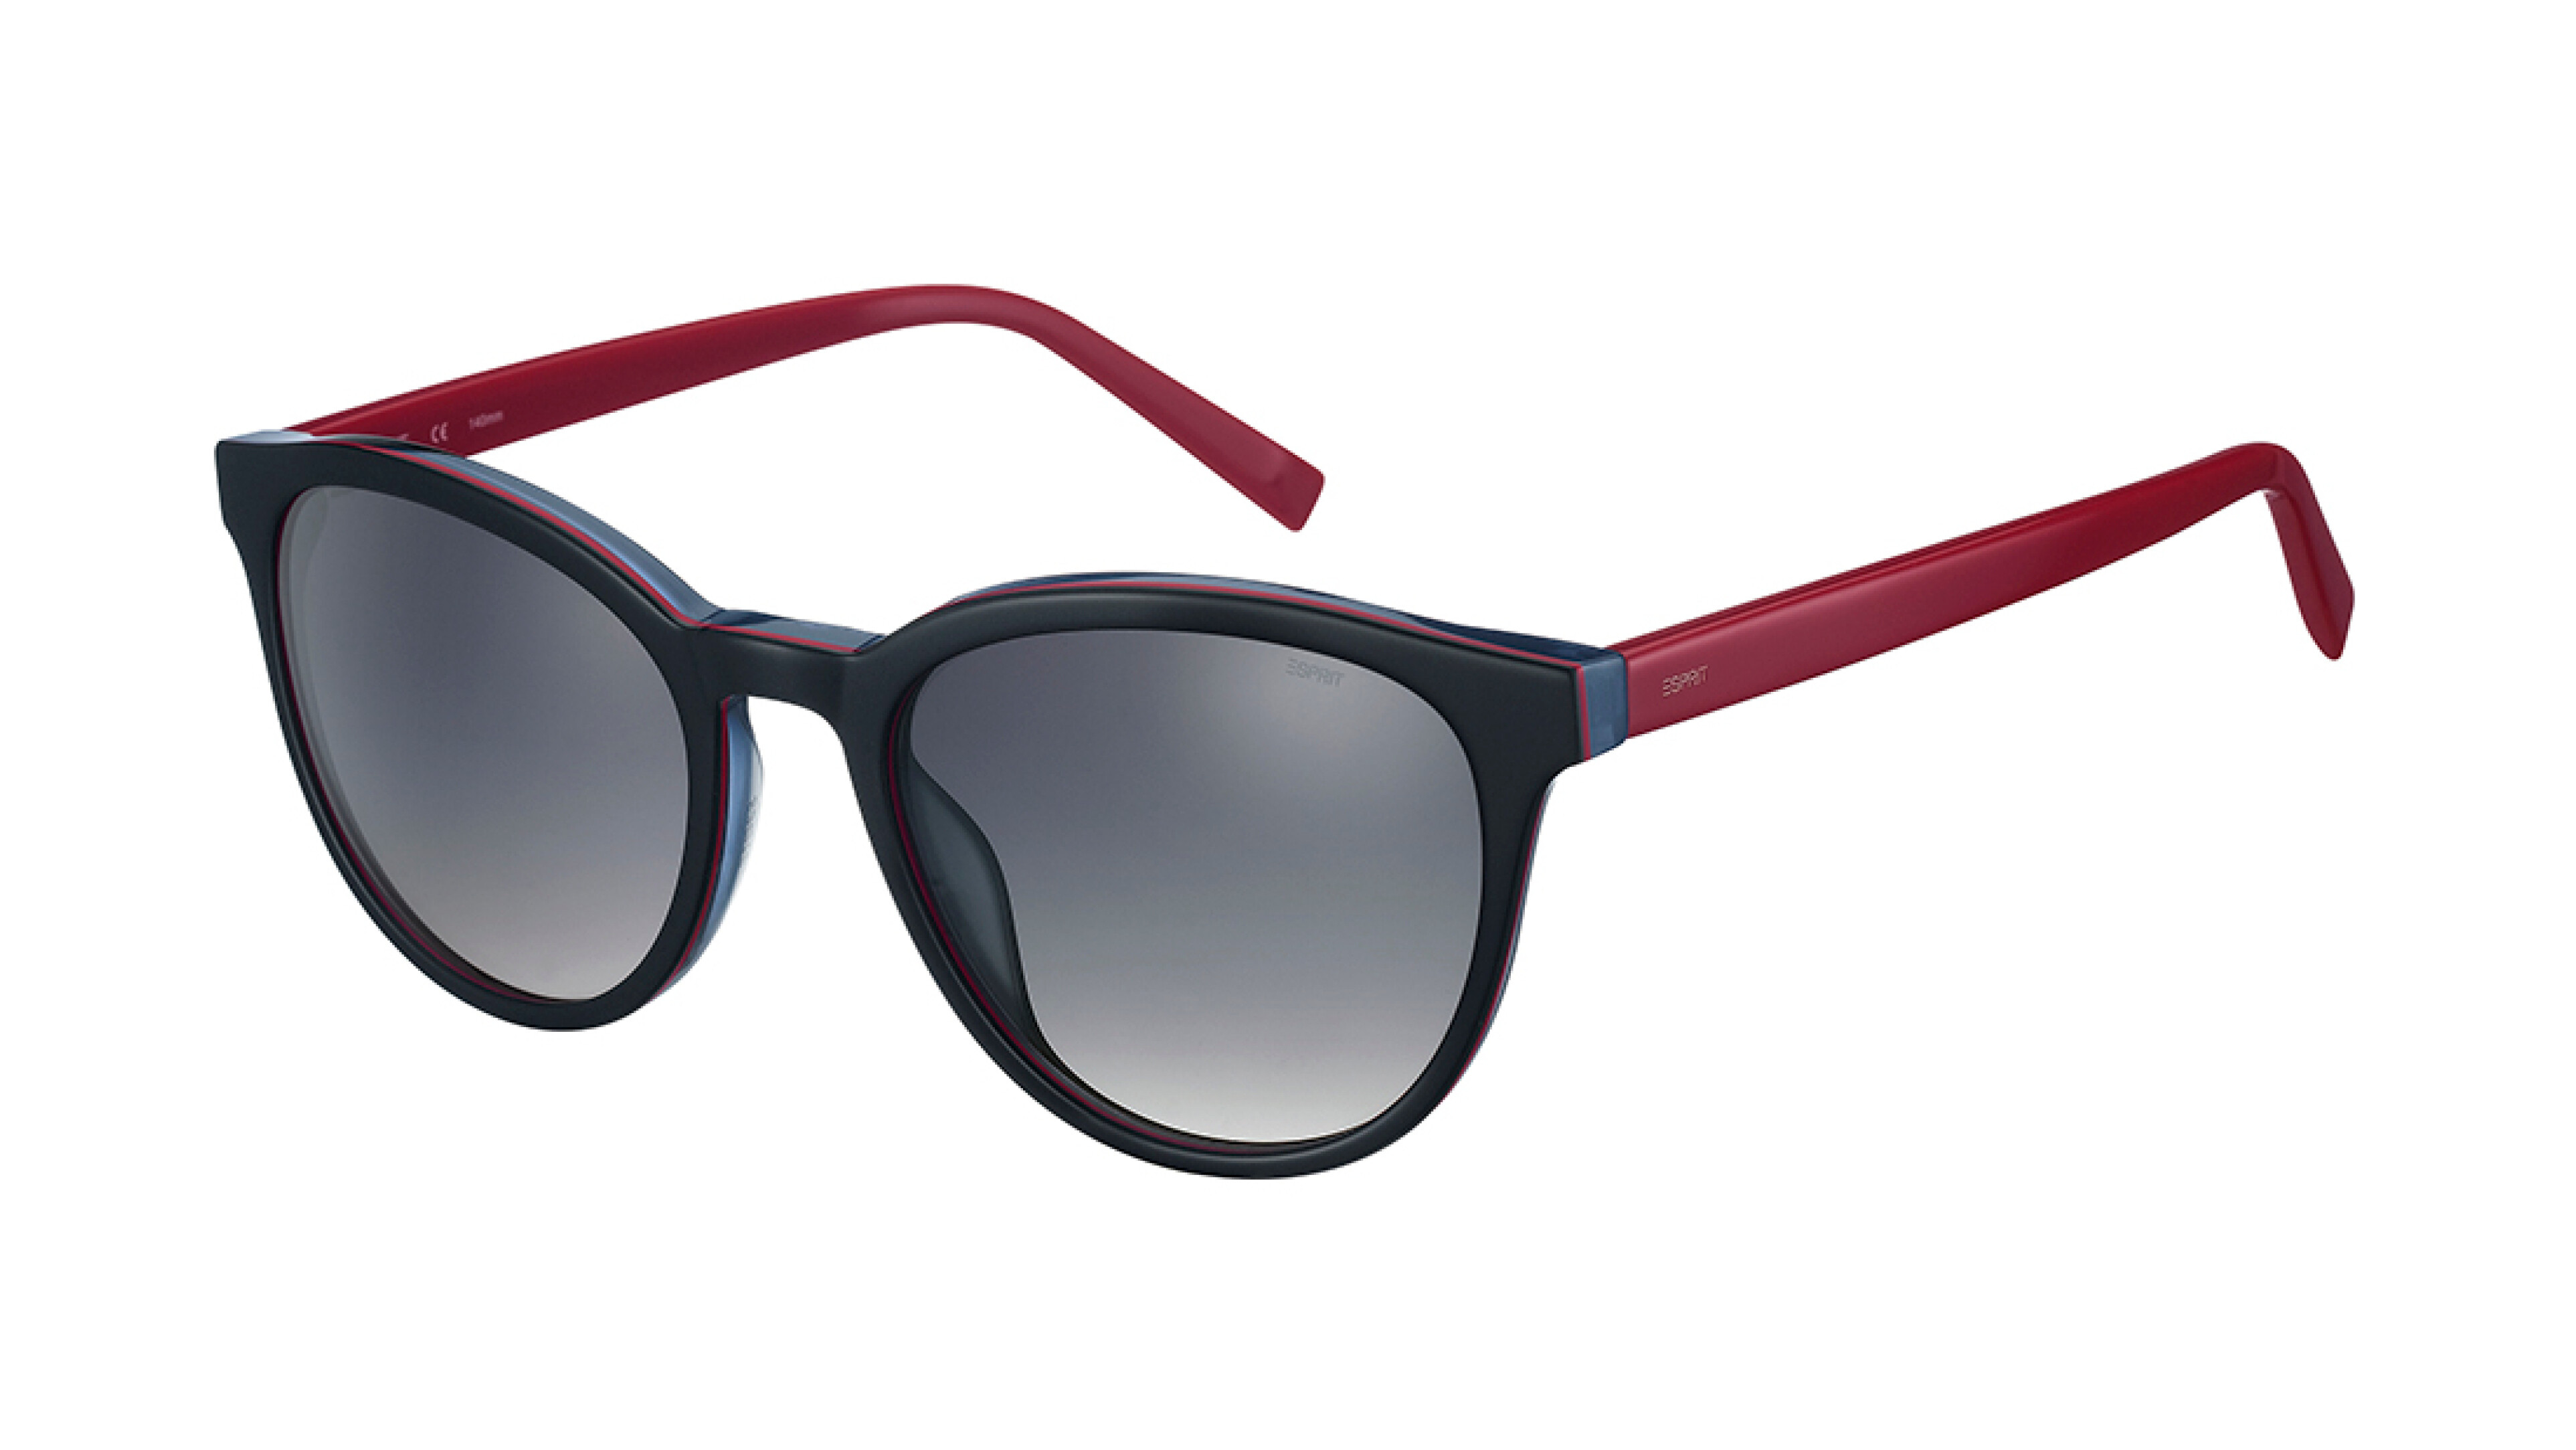 [products.image.front] Esprit 40032 538 Sonnenbrille